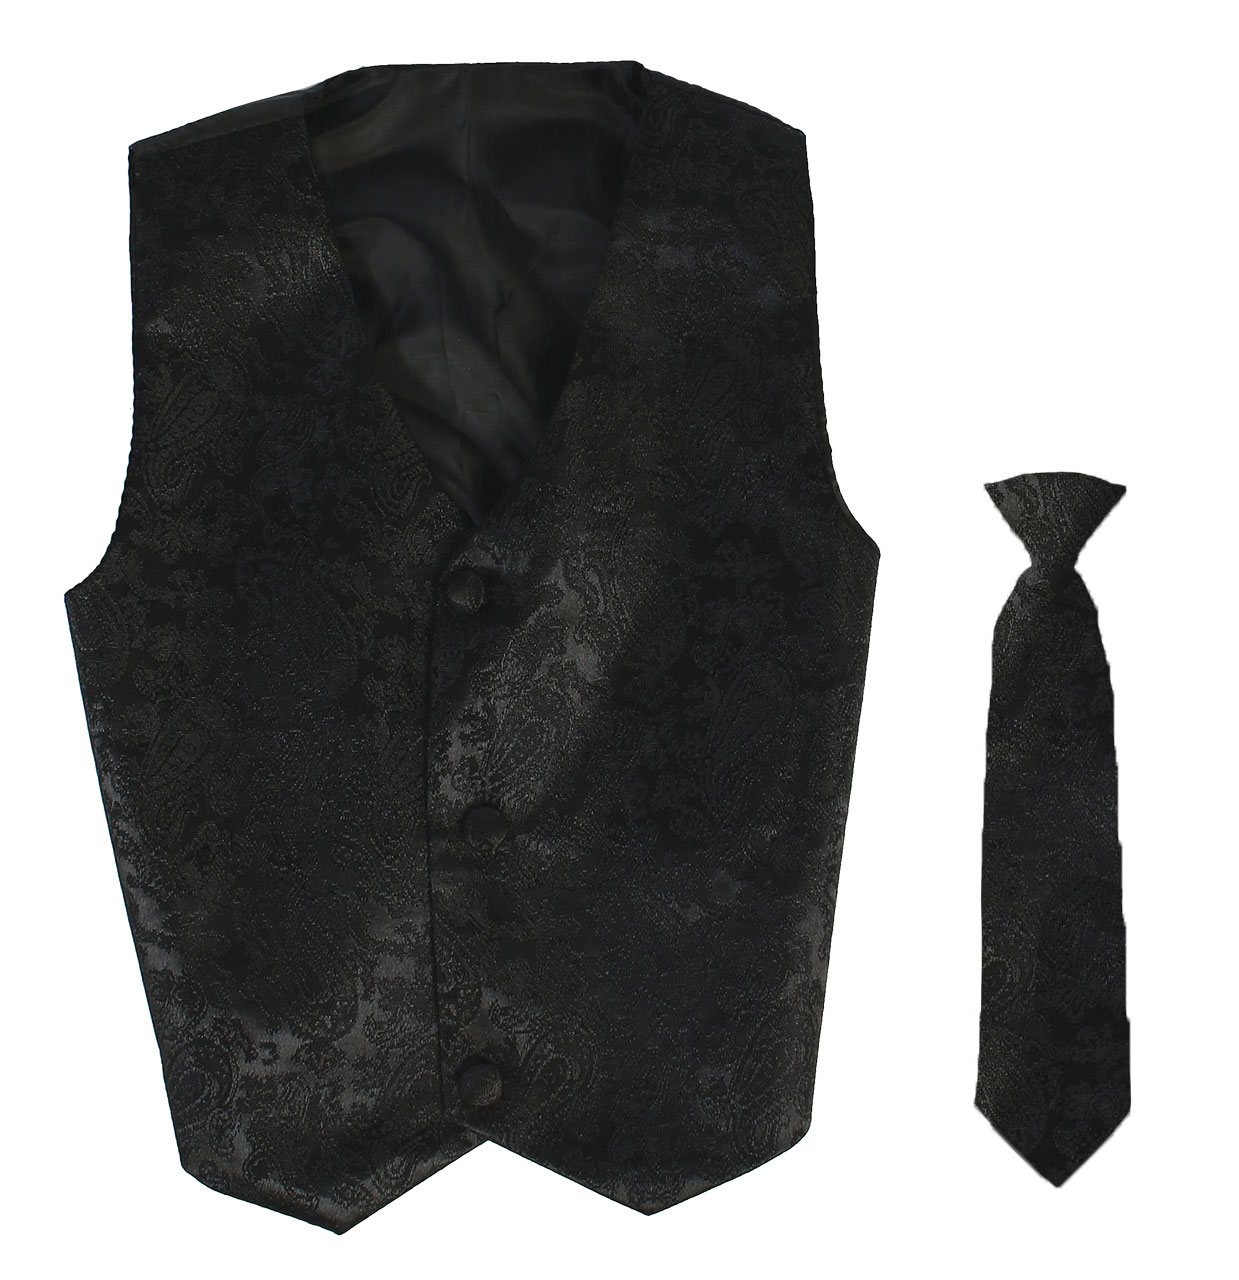 Vest and Clip On Boy Necktie set - Black Paisley - 2T/3T